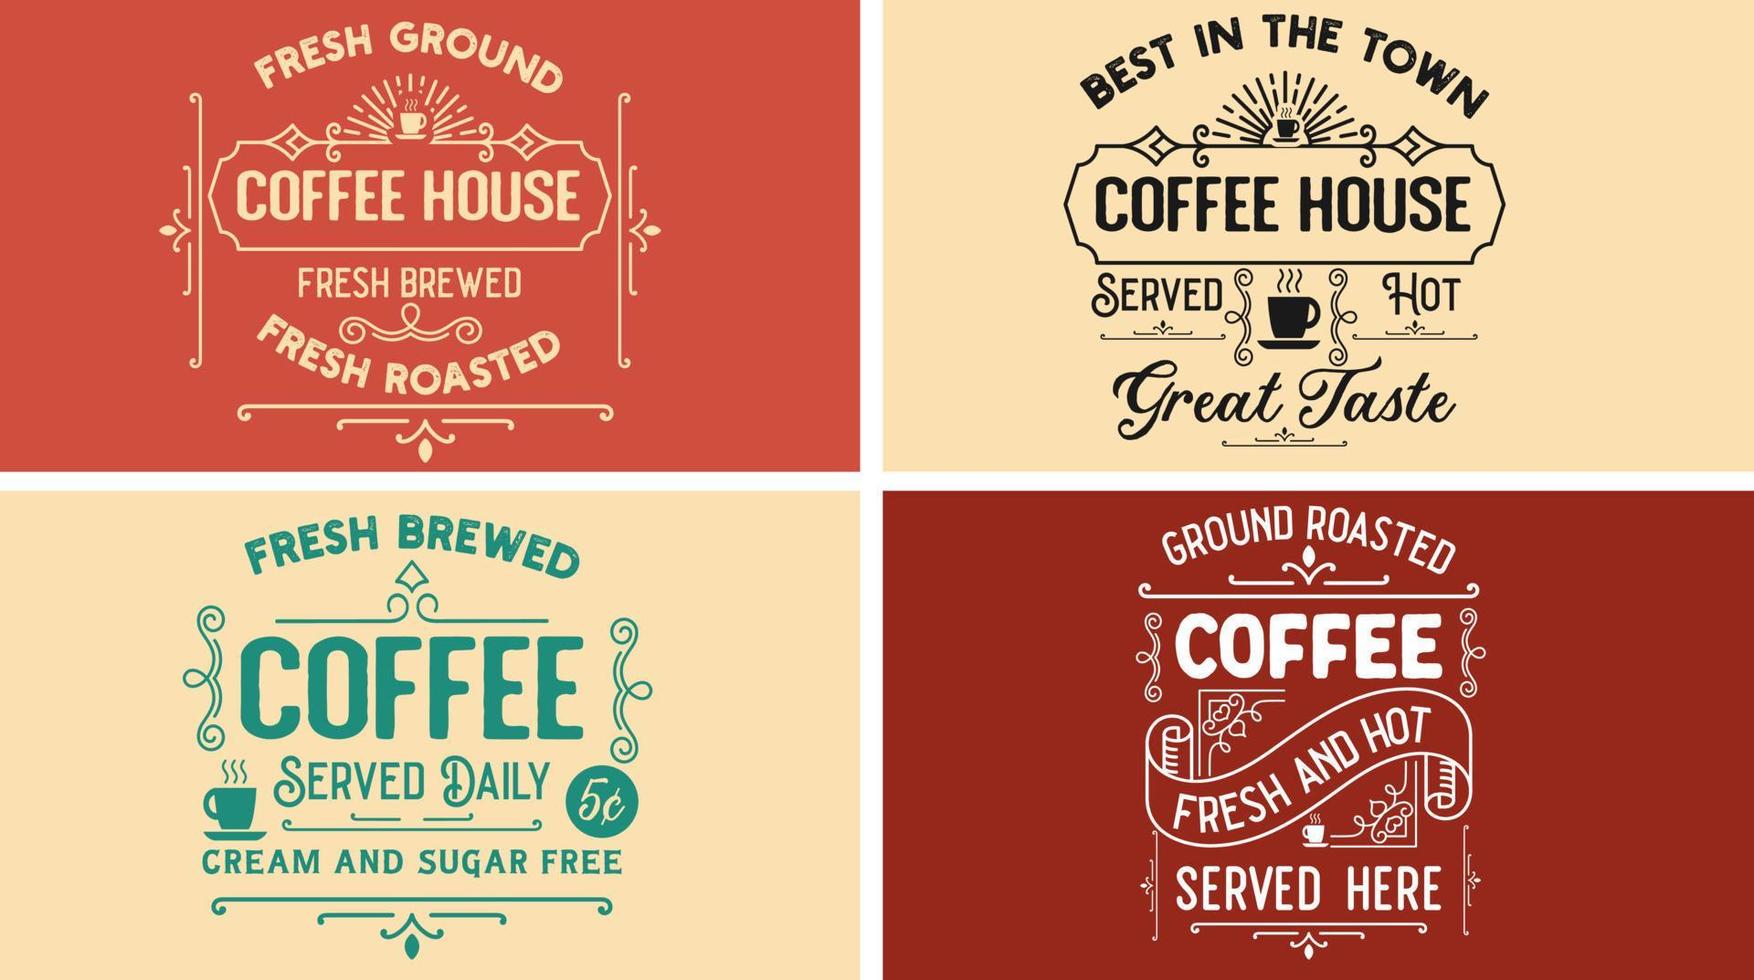 wijnoogst koffie teken vector grafisch SVG ontwerp voor koffie winkel, bar, huis. vers grond, geroosterd, gebrouwen koffie huis. geserveerd dagelijks, room en suiker vrij. vers en heet, Super goed smaak. het beste in de dorp.